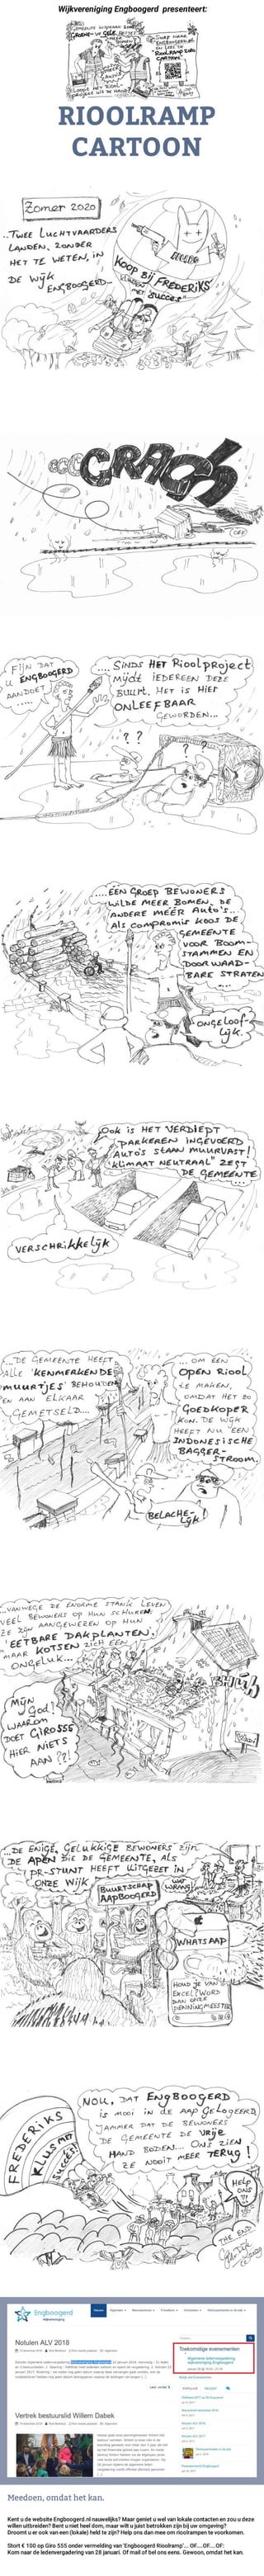 Rioolramp cartoon | Hoe de gemeente Bunnik de wijk Engboogerd kan laten afglijden